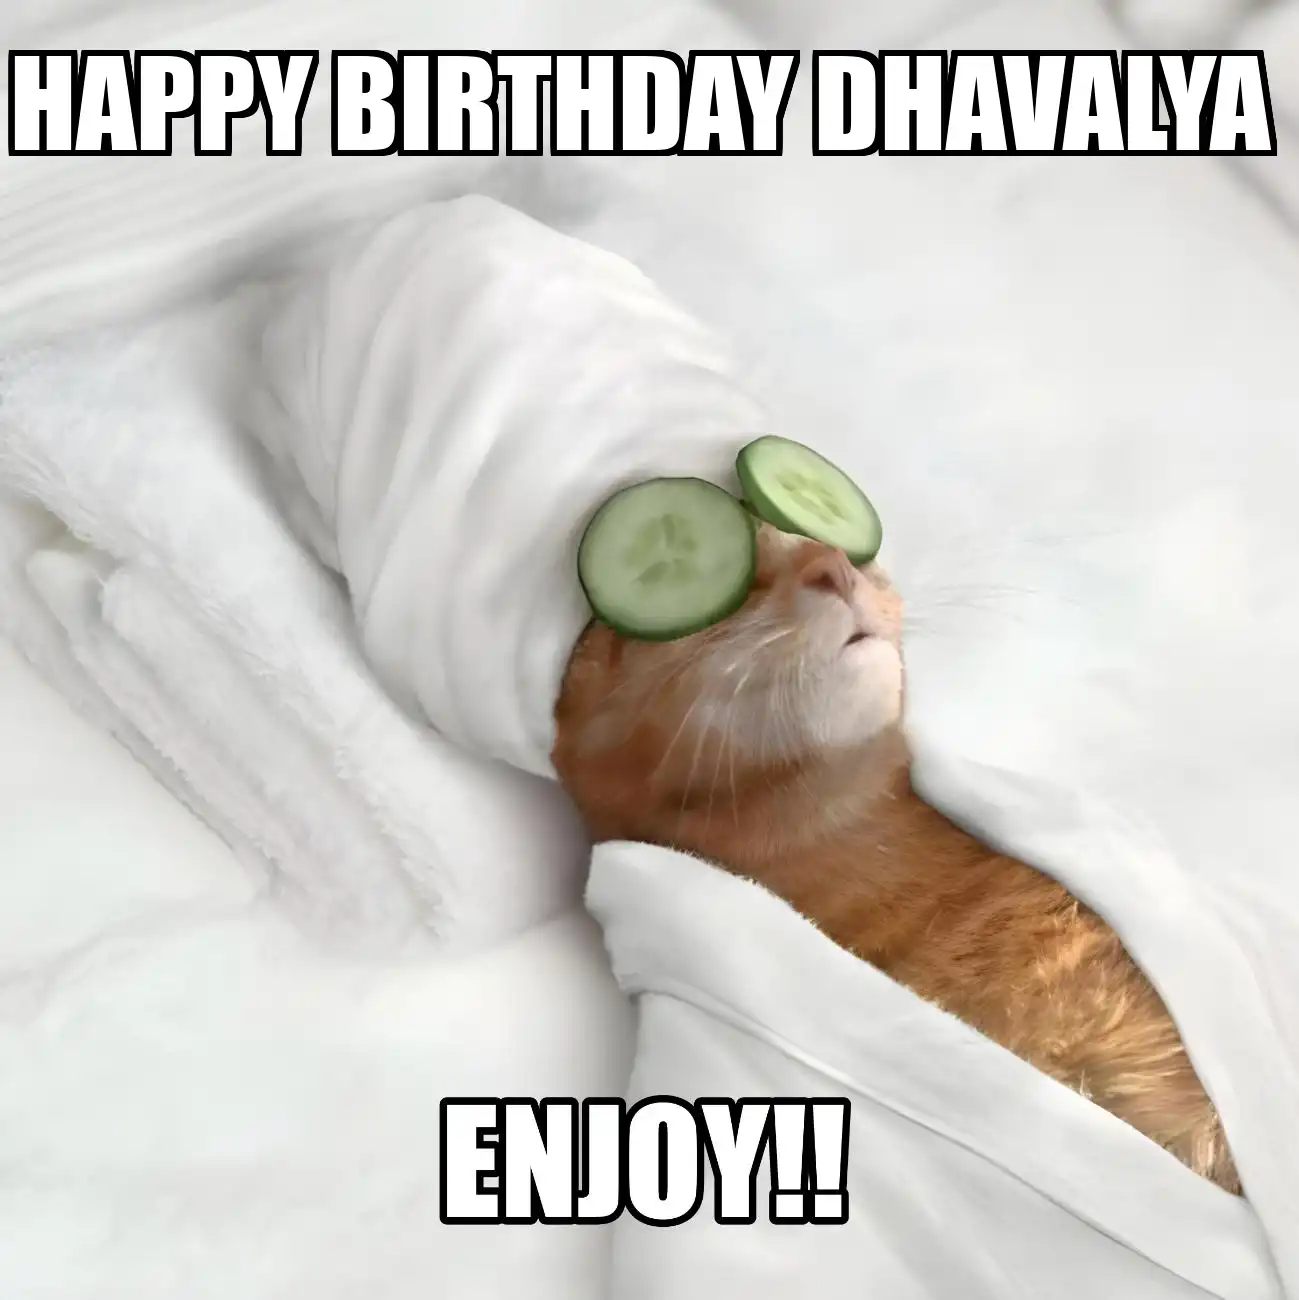 Happy Birthday Dhavalya Enjoy Cat Meme